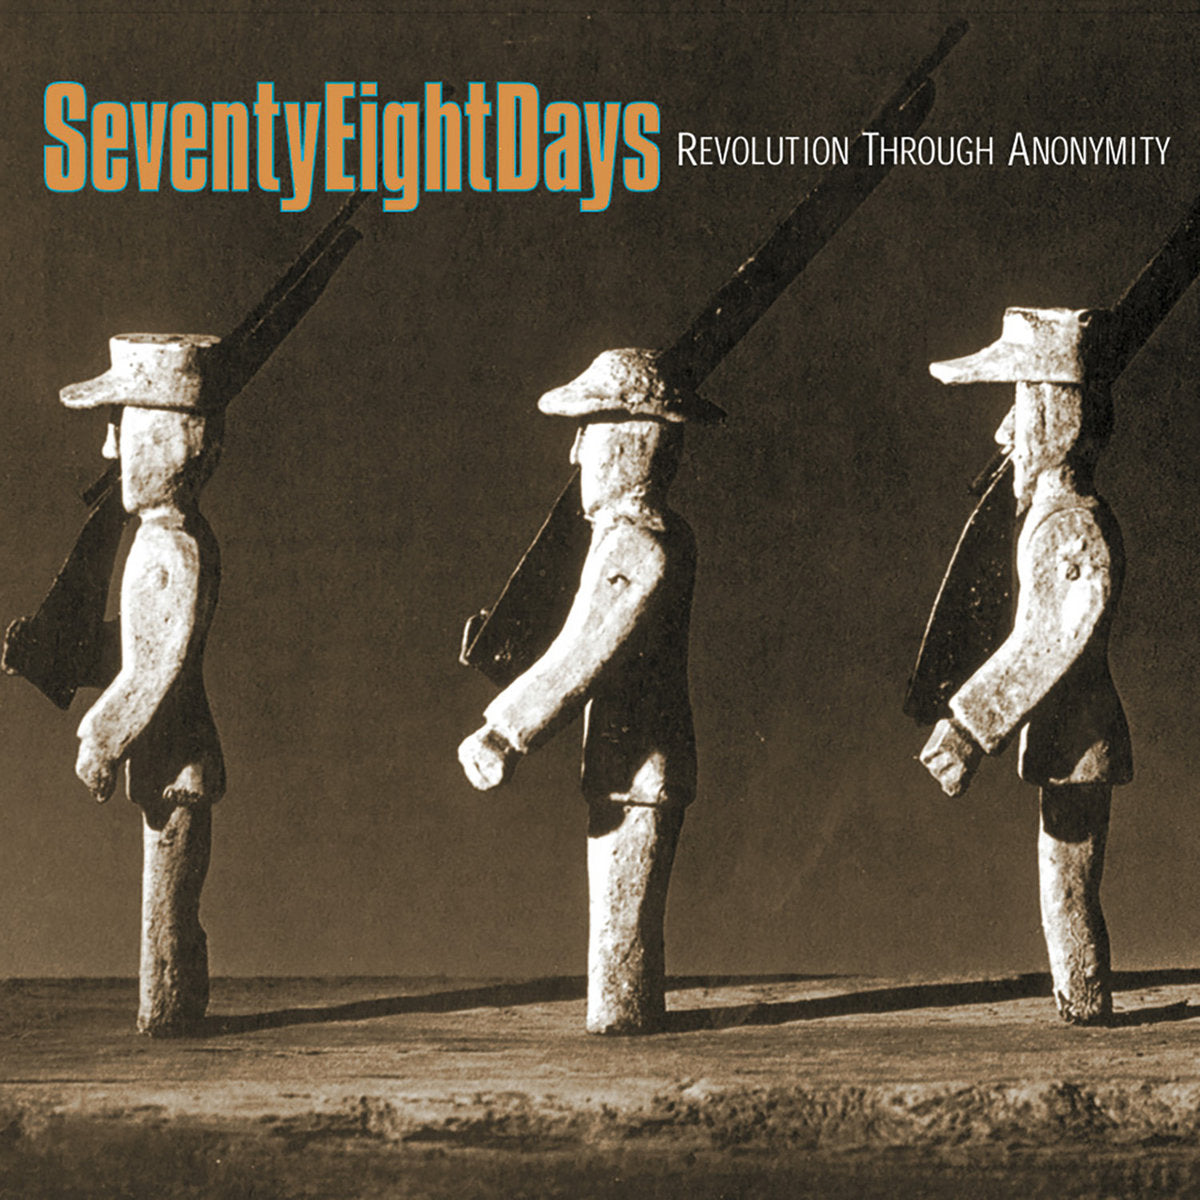 Seventy Eight Days "Revolution Through Anonymity" 7" Vinyl